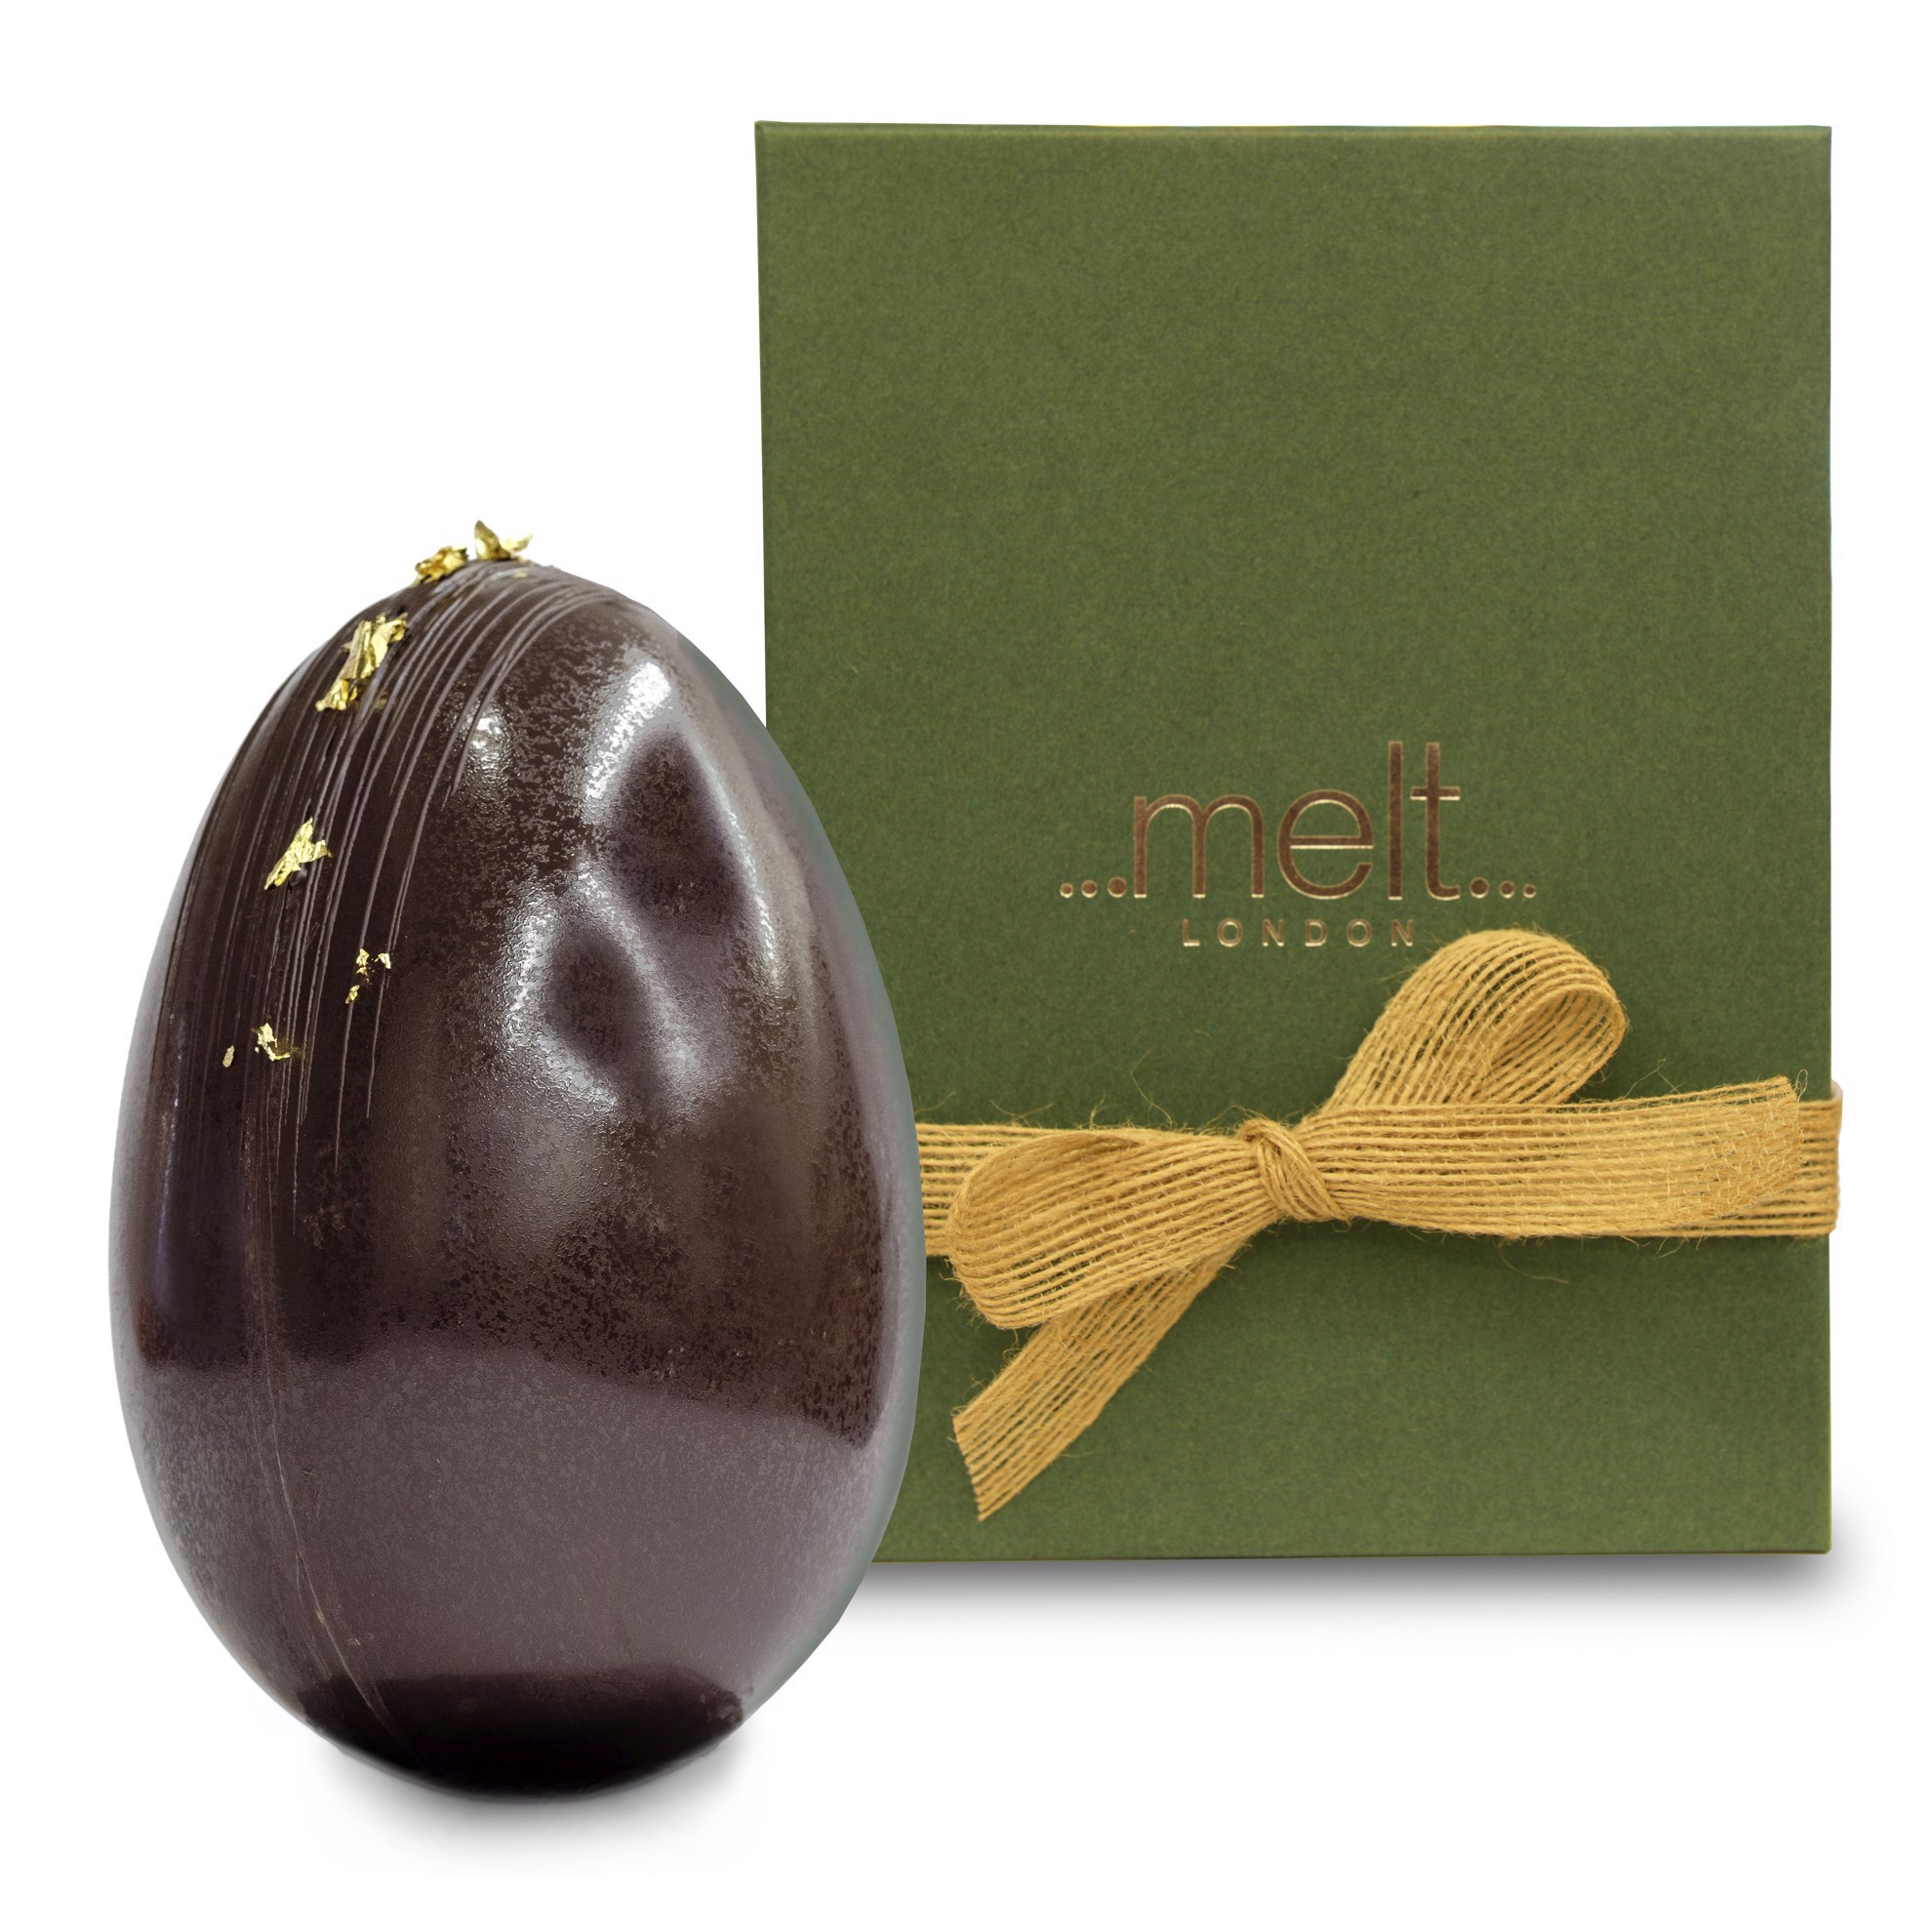 Melt Wild Easter Egg